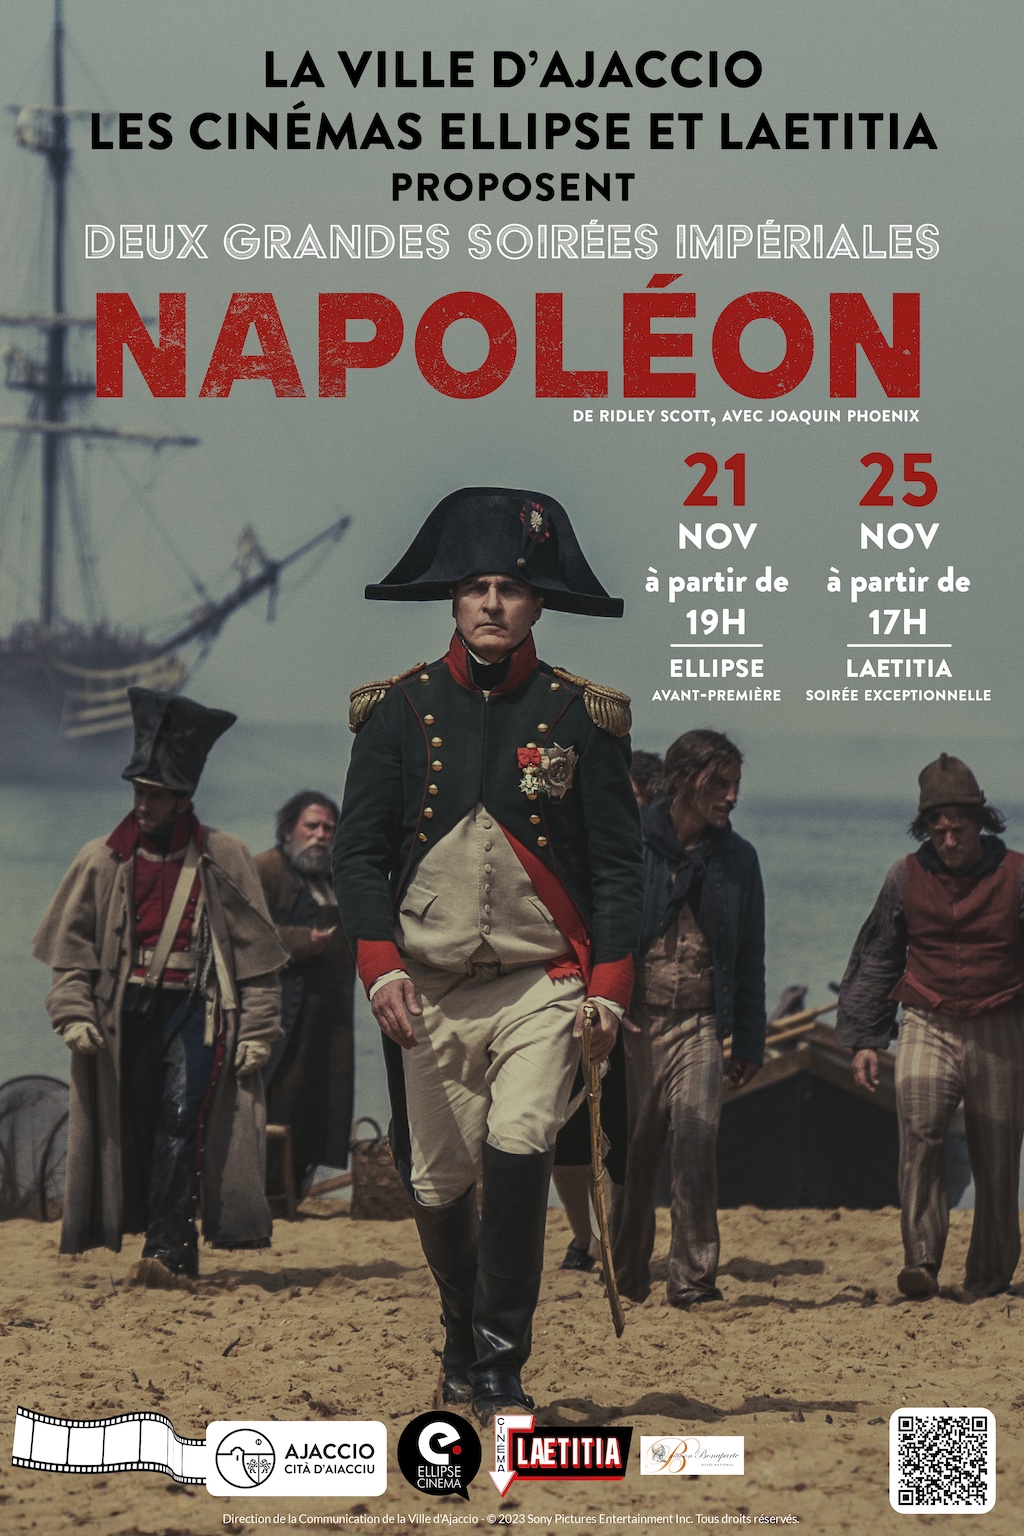 La Ville d’Ajaccio s’associe aux cinémas Ellipse et Laetitia pour la sortie du film Napoléon